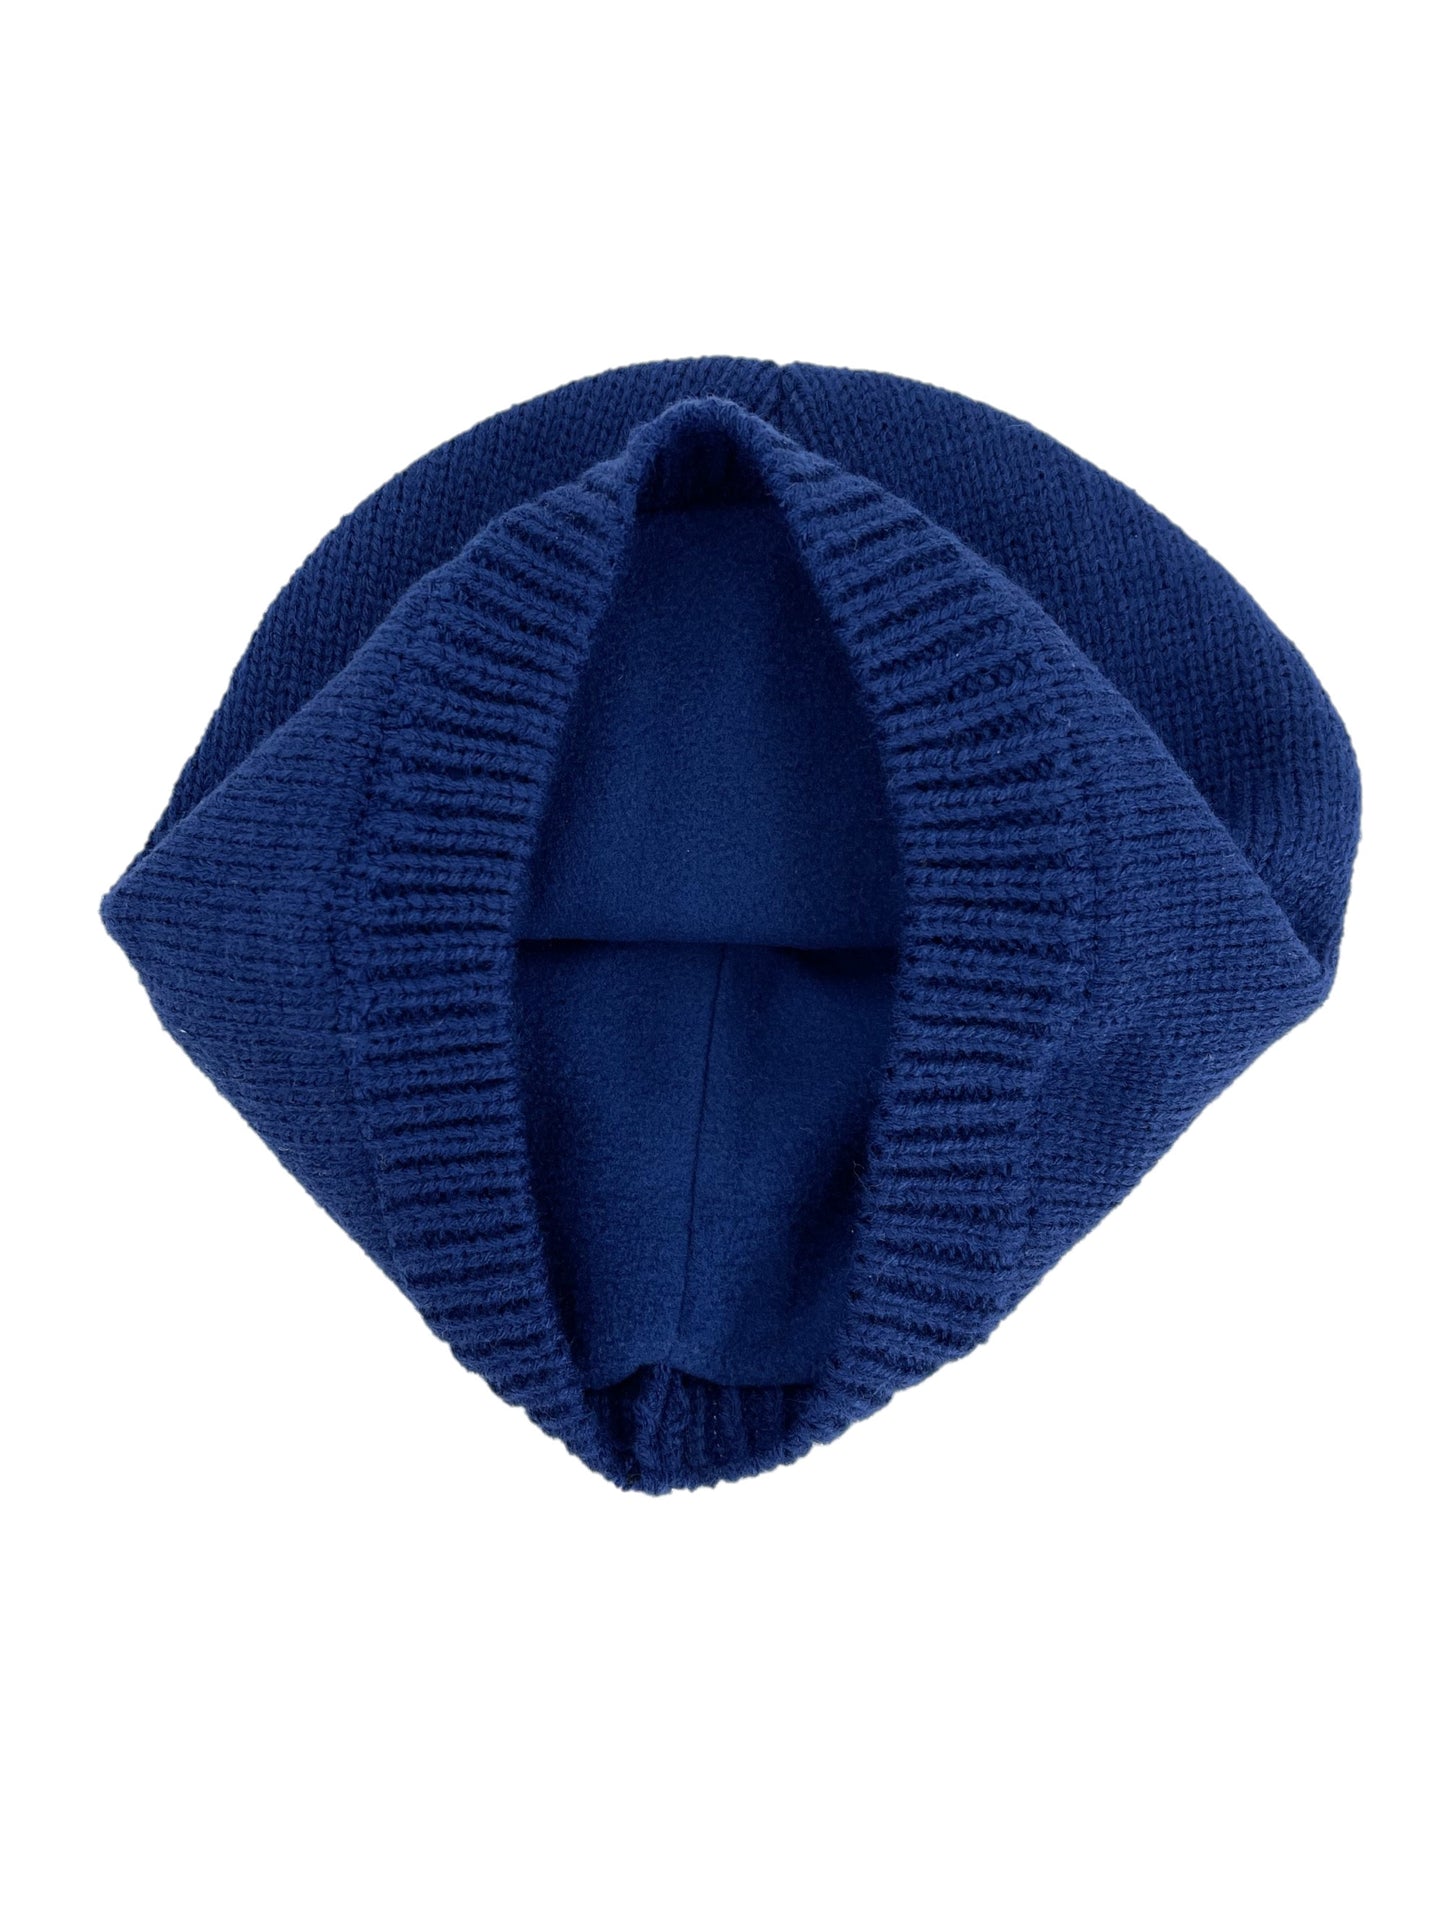 Boys Hat & Gloves Set Rocket Design Blue Knitted Fleece-Lined Hat Thermal Gloves